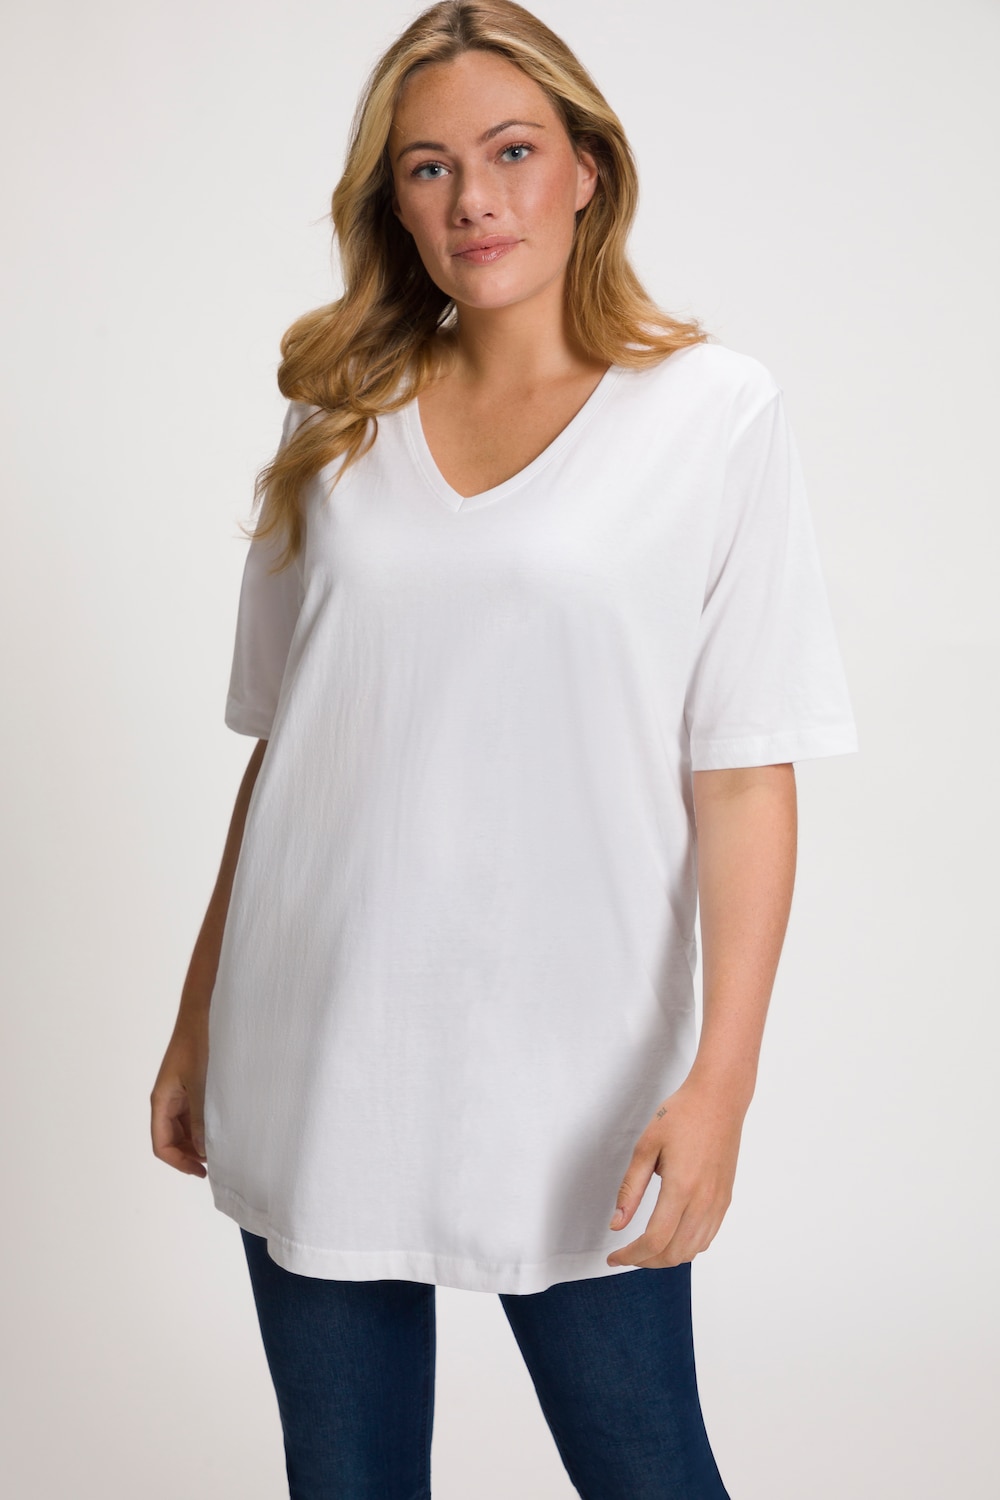 Große Größen T-Shirt, Damen, weiß, Größe: 42/44, Baumwolle, Ulla Popken von Ulla Popken